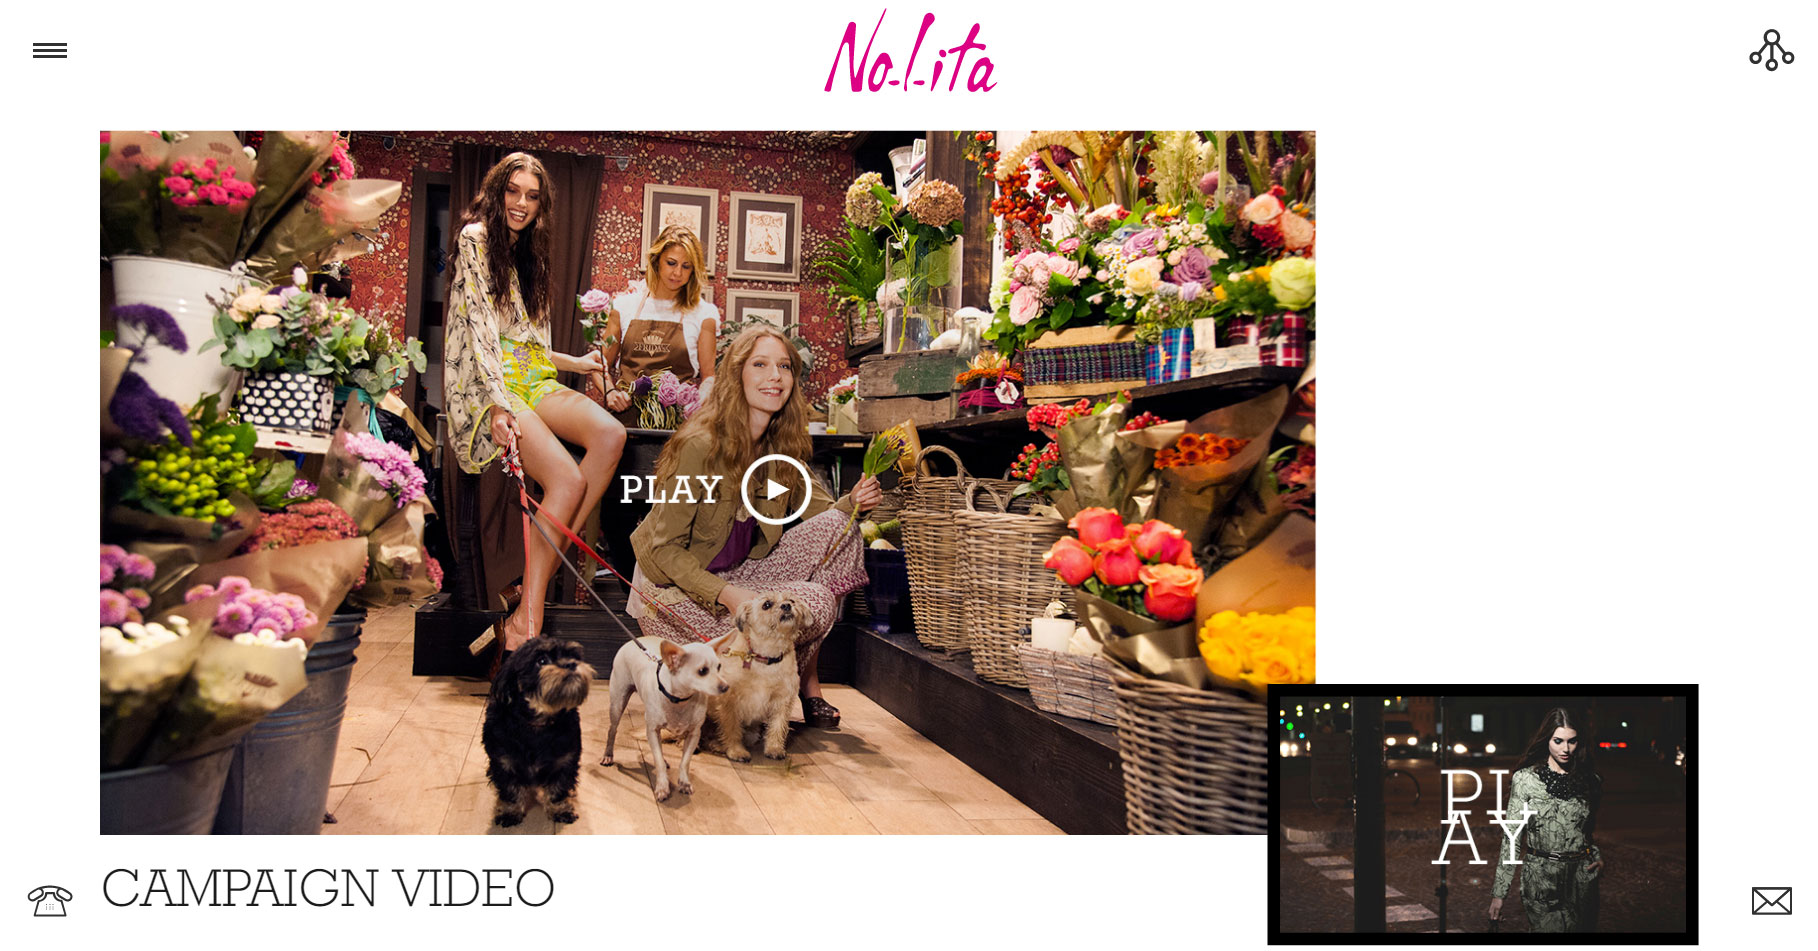 Nolita - Website of the Day